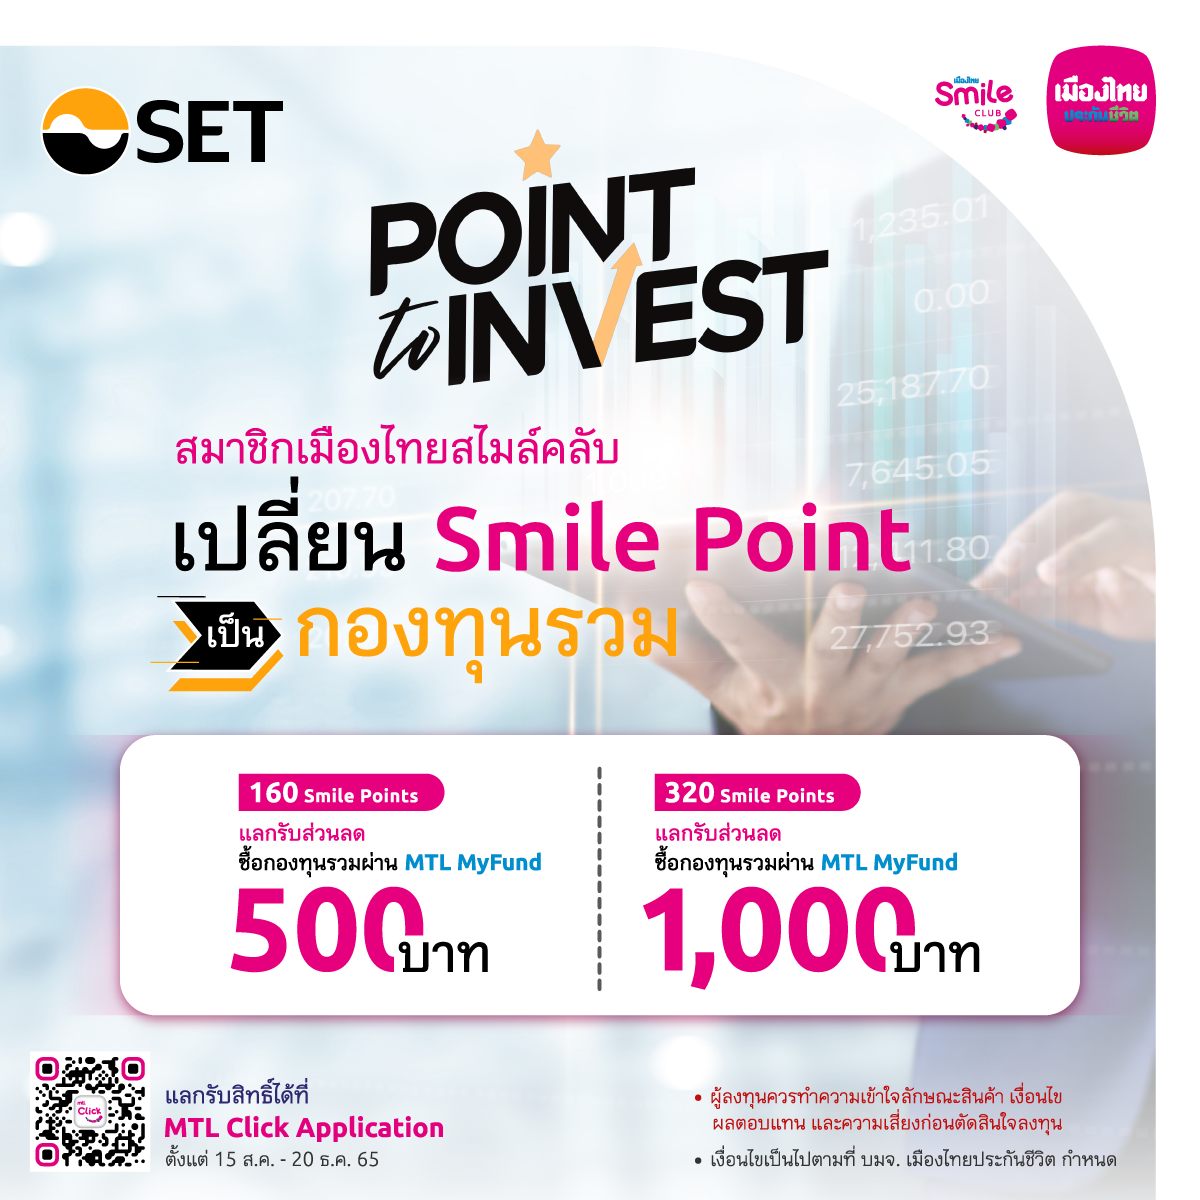 เมืองไทยประกันชีวิต จับมือตลาดหลักทรัพย์แห่งประเทศไทย เปิดตัวโครงการ "Smile Point to Invest"